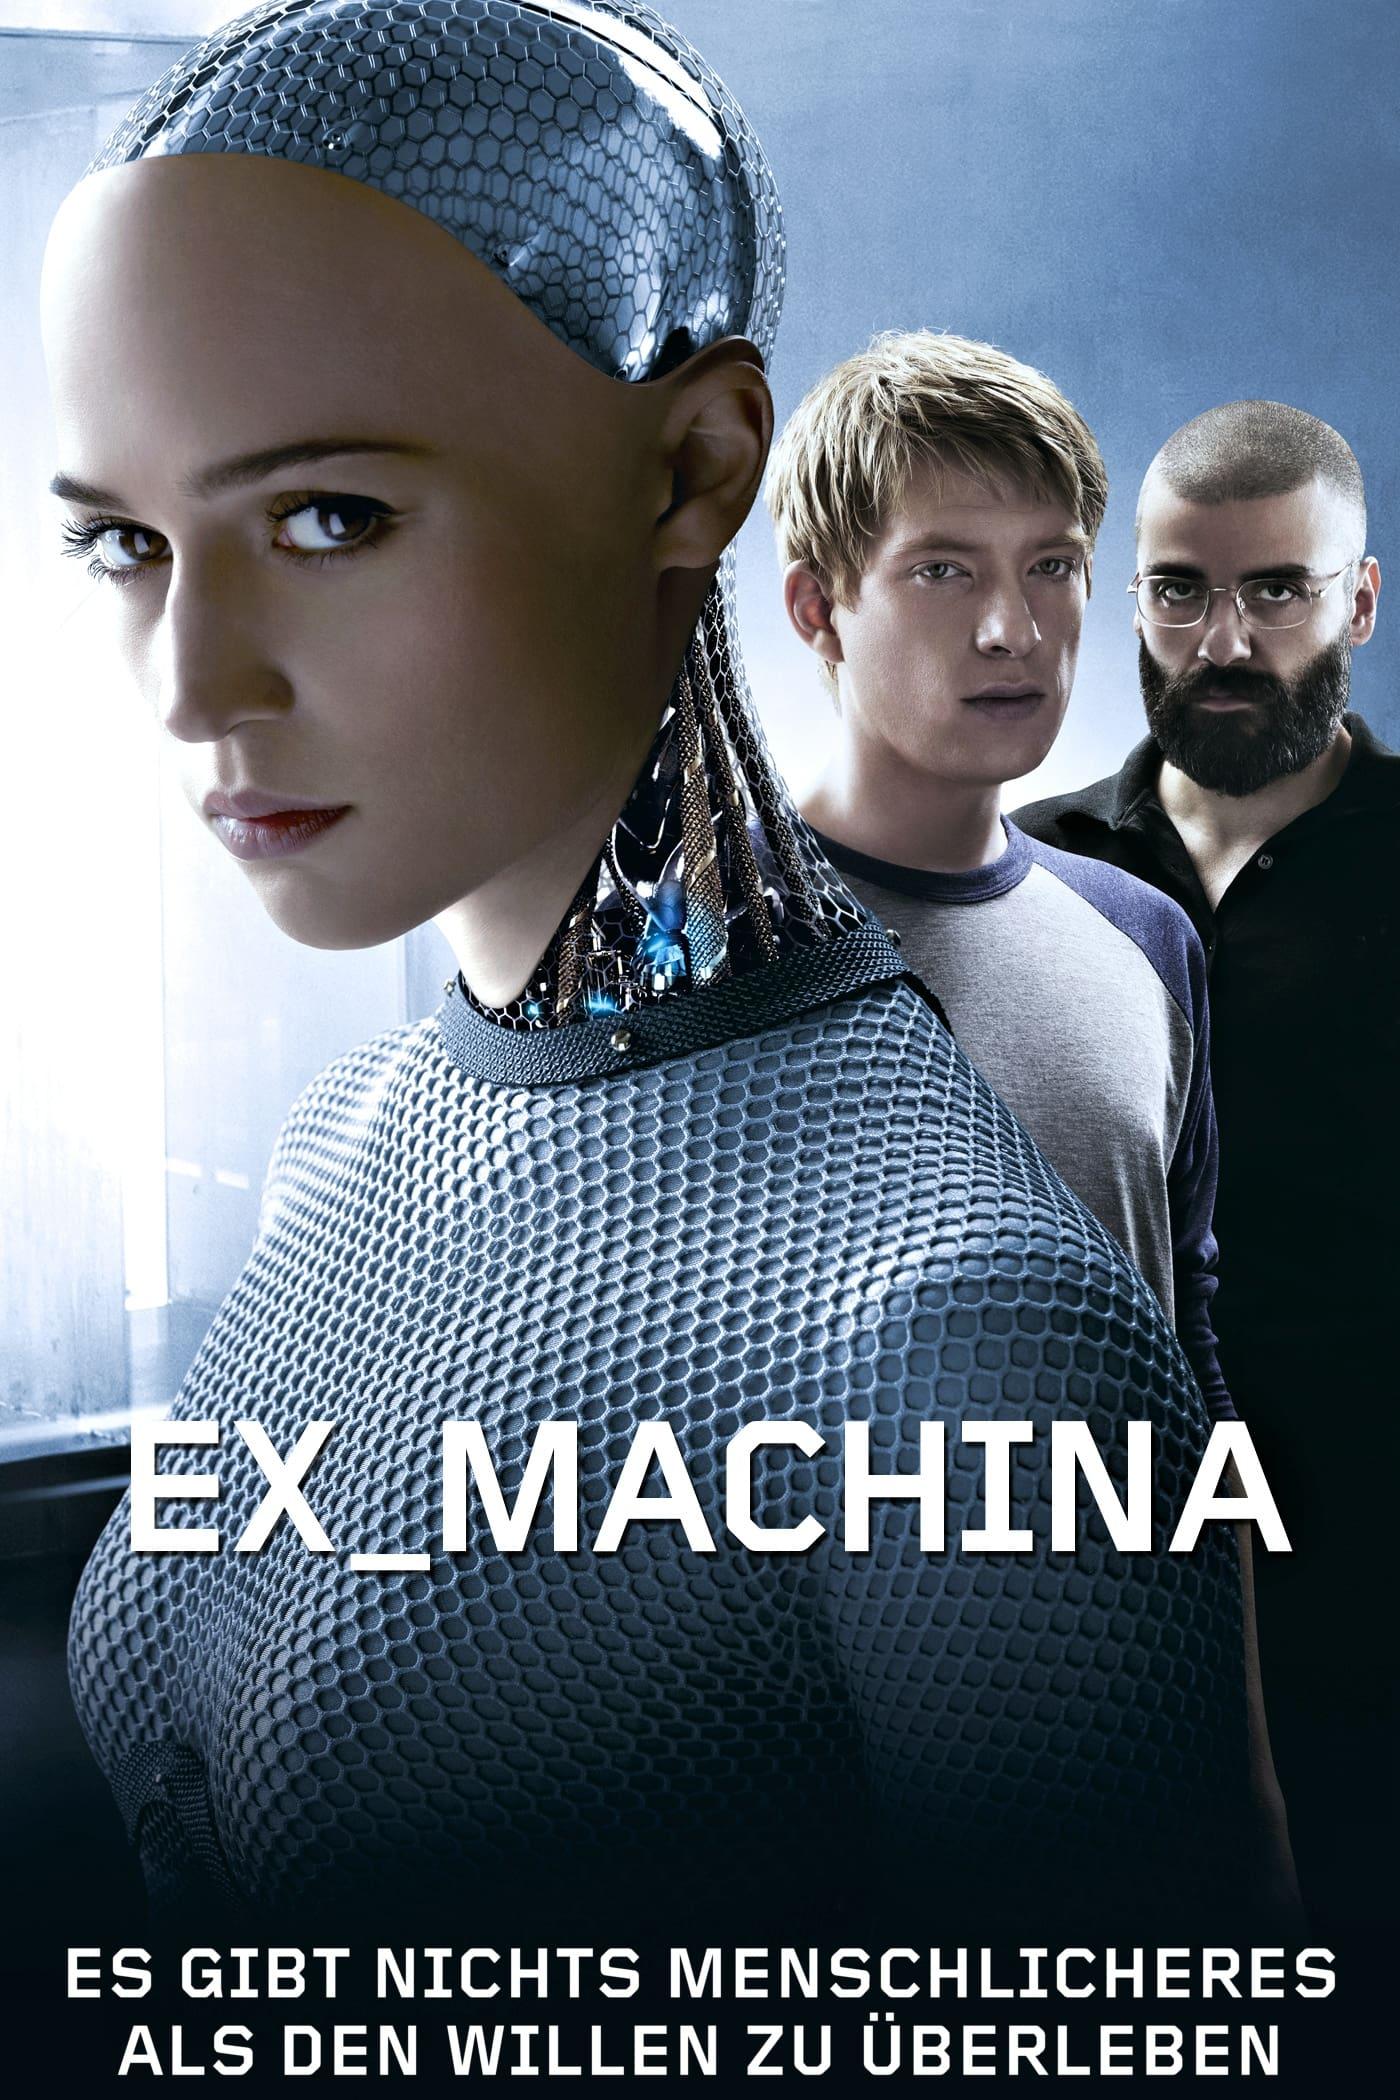 Ex Machina poster